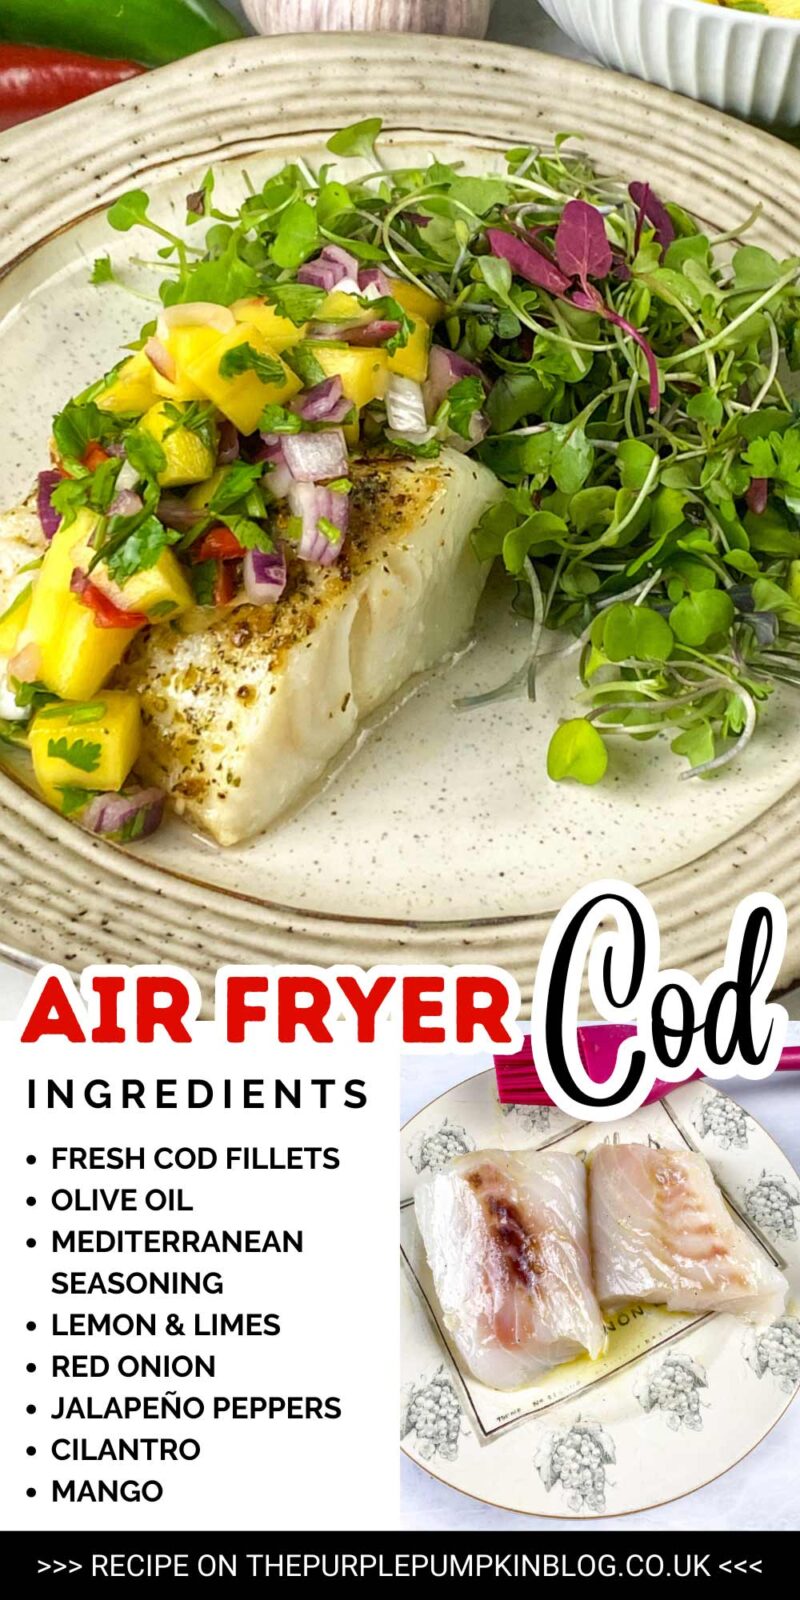 Ingredients for Air Fryer Cod